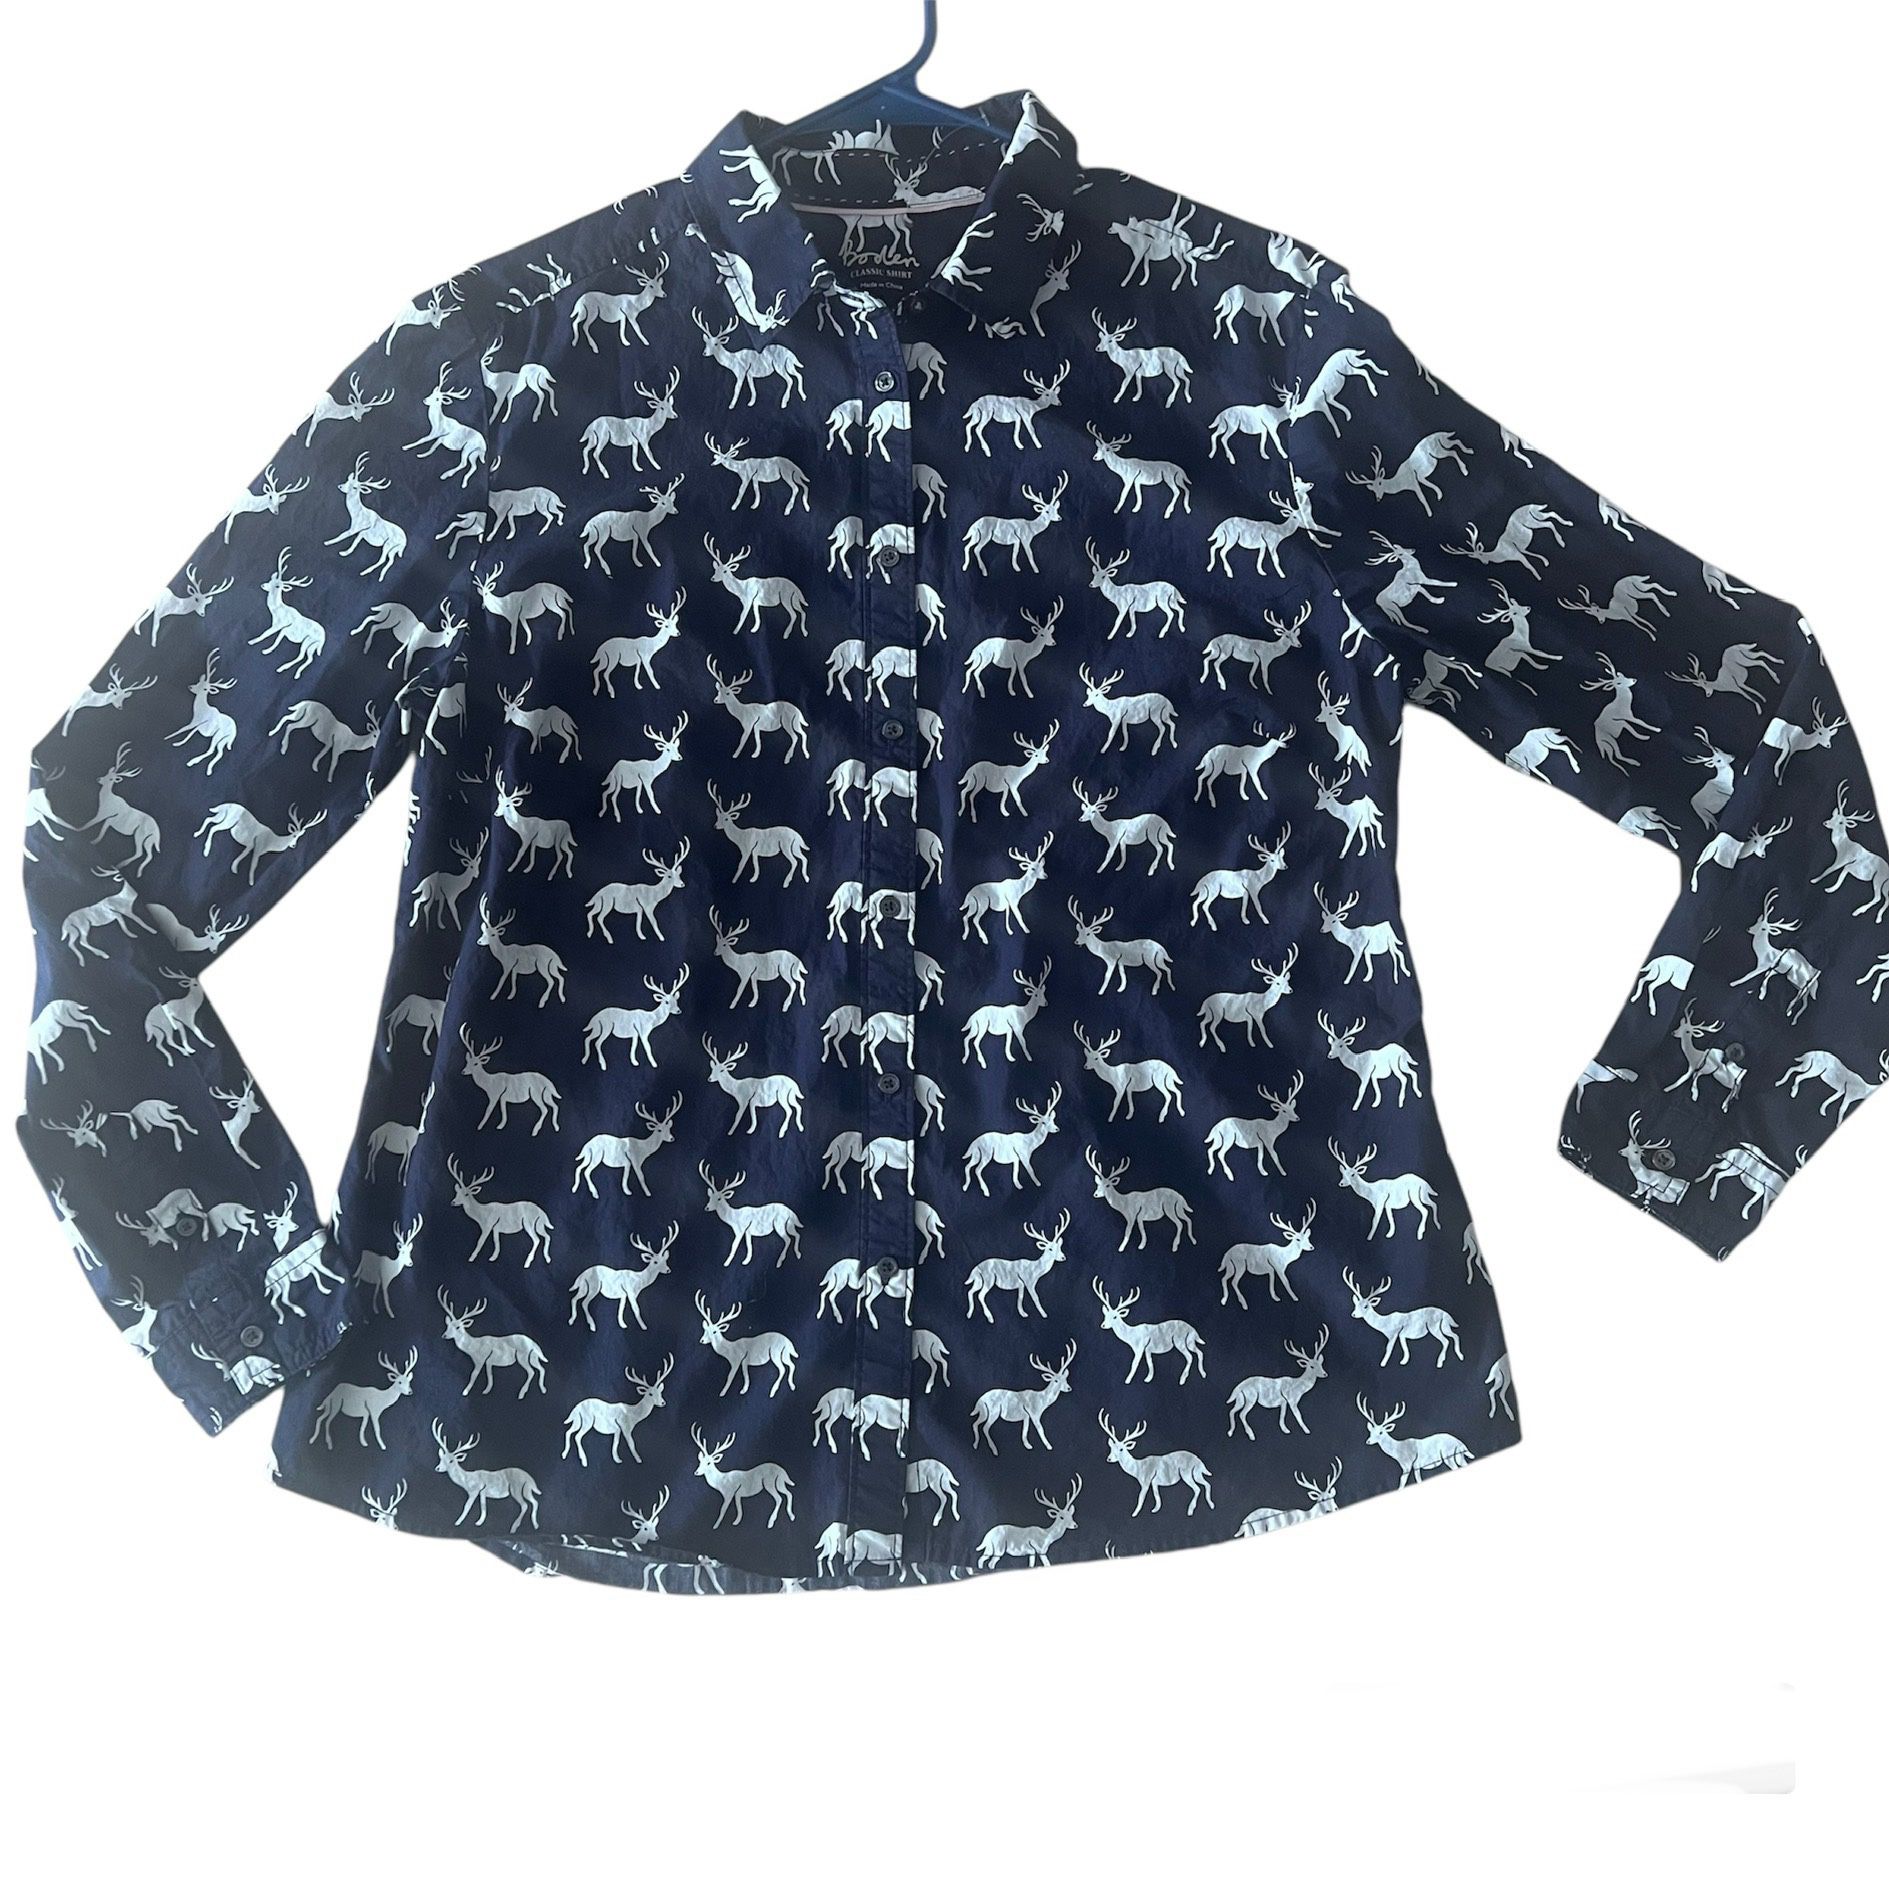 Boden Women’s The Classic Shirt Size 12R Deer Print Long Sleeve Navy Button Up